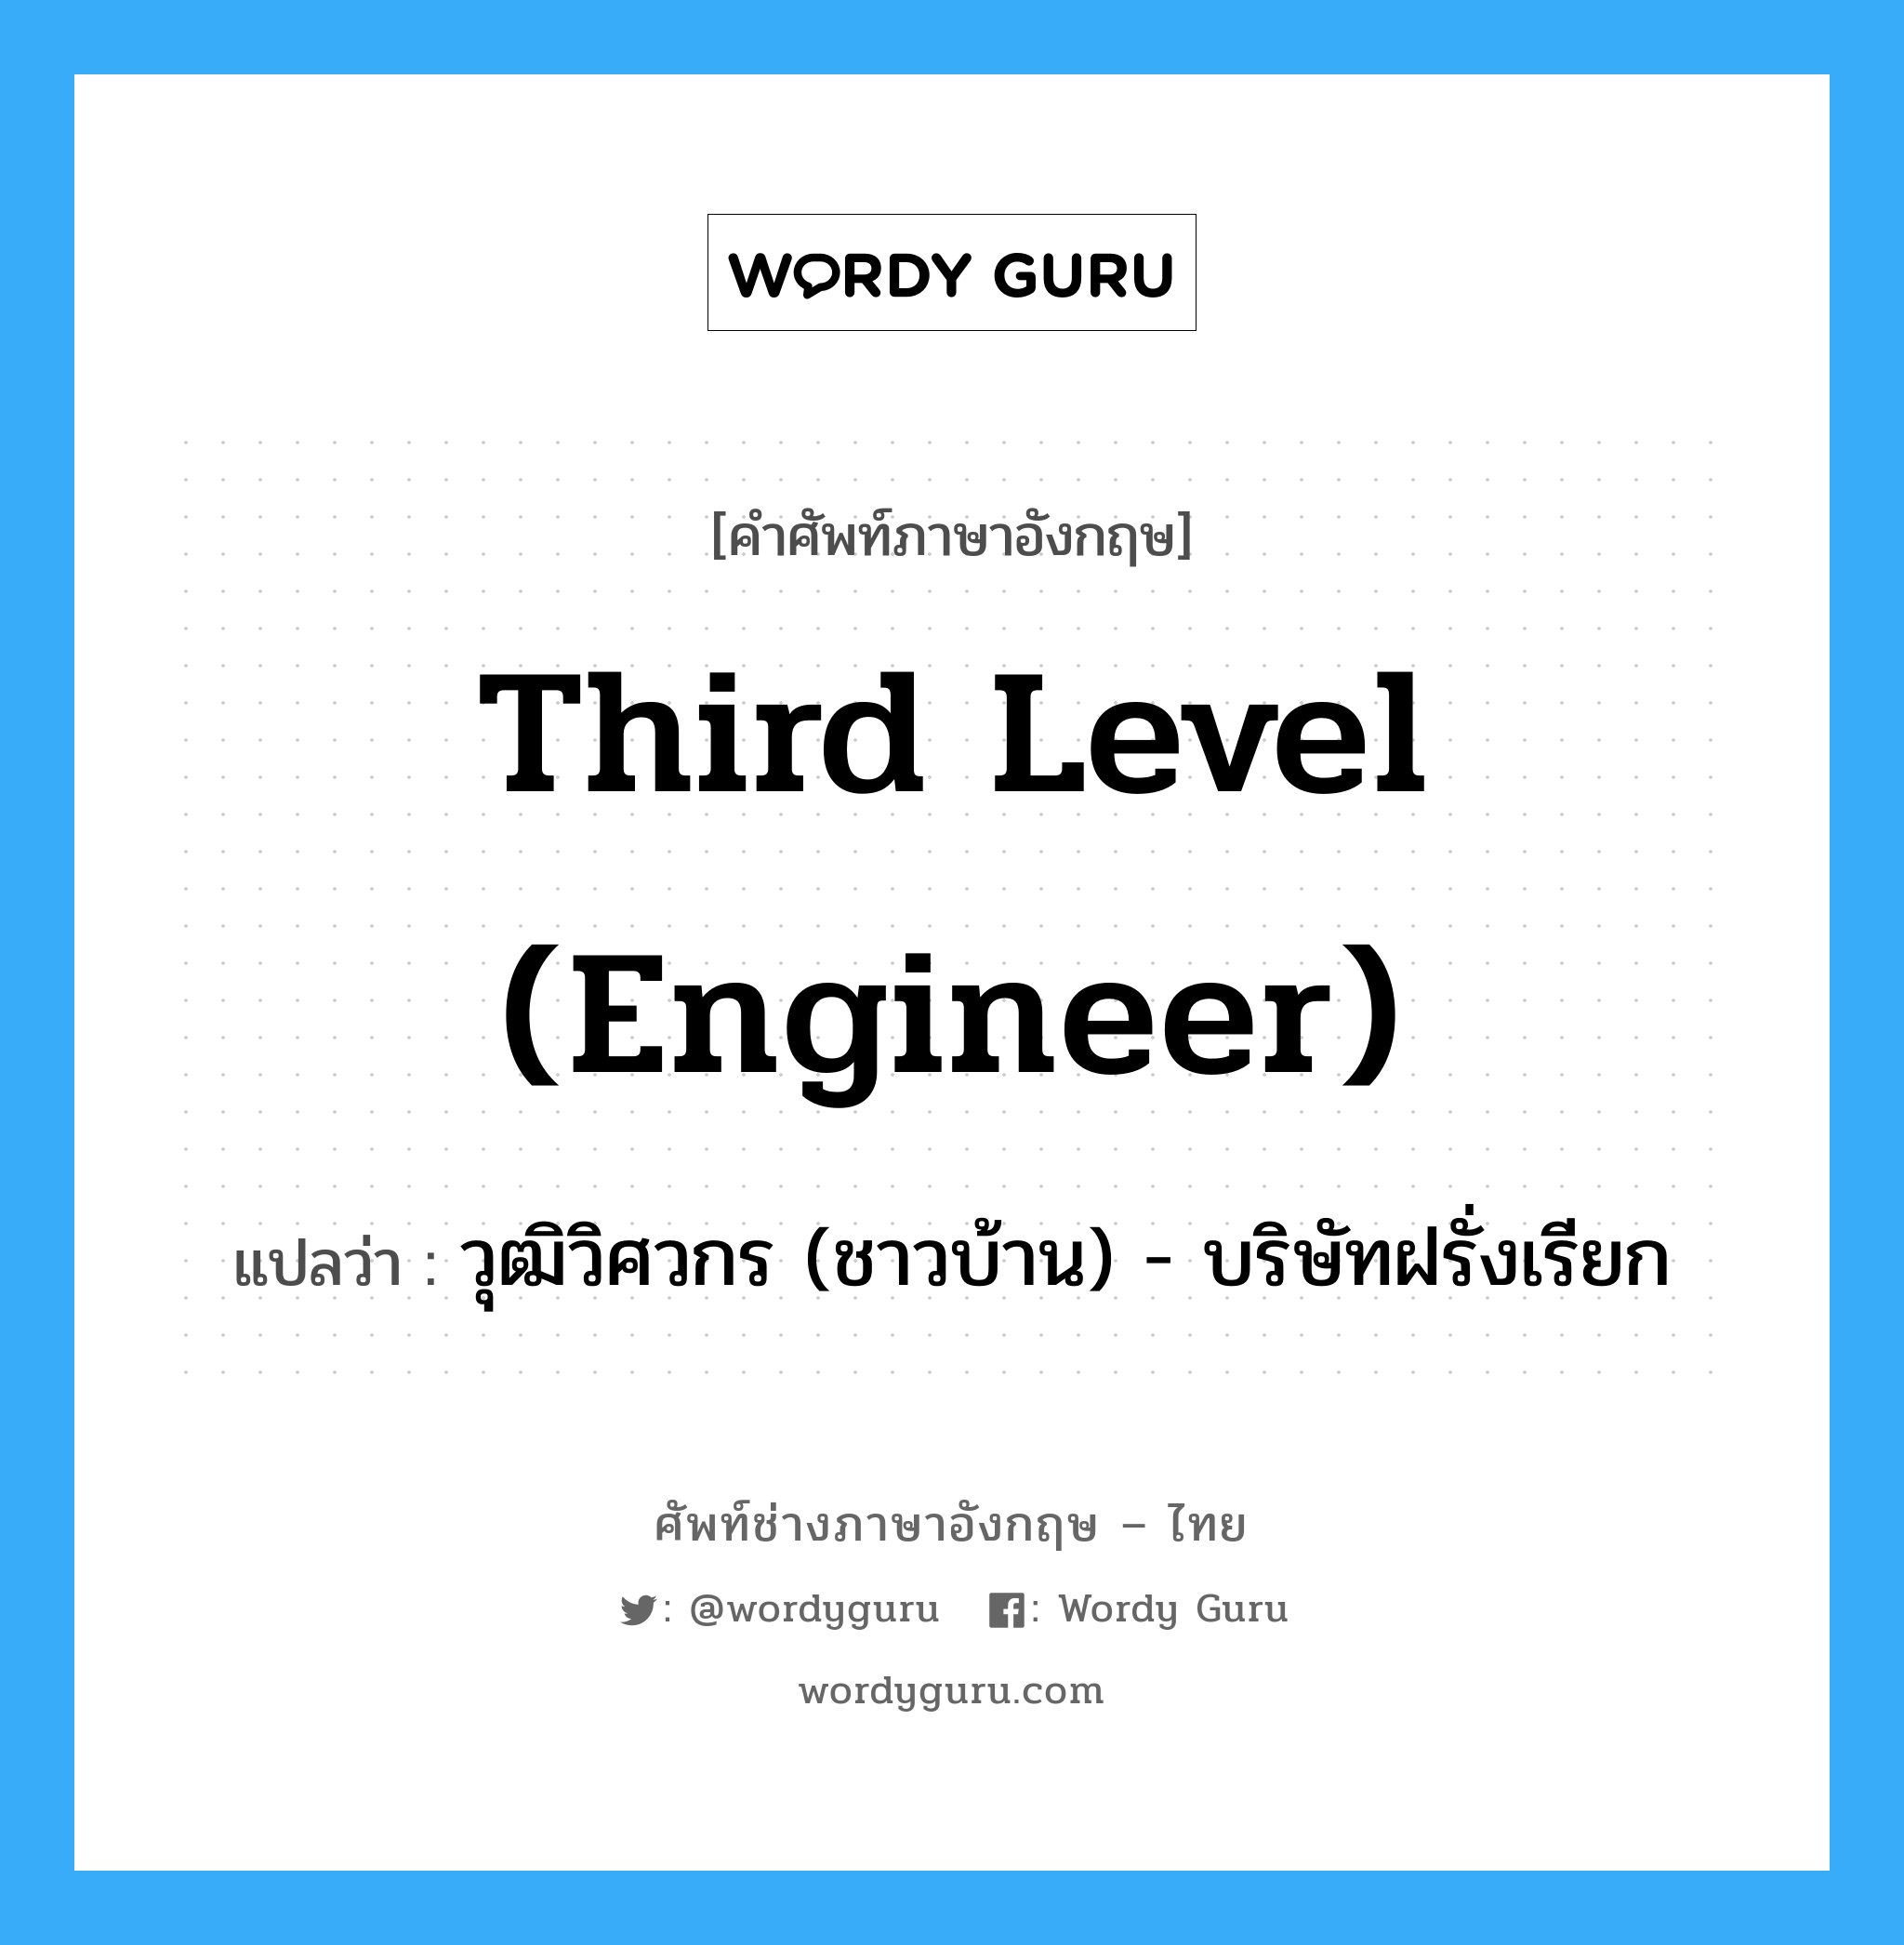 Third level (engineer) แปลว่า?, คำศัพท์ช่างภาษาอังกฤษ - ไทย Third level (engineer) คำศัพท์ภาษาอังกฤษ Third level (engineer) แปลว่า วุฒิวิศวกร (ชาวบ้าน) - บริษัทฝรั่งเรียก